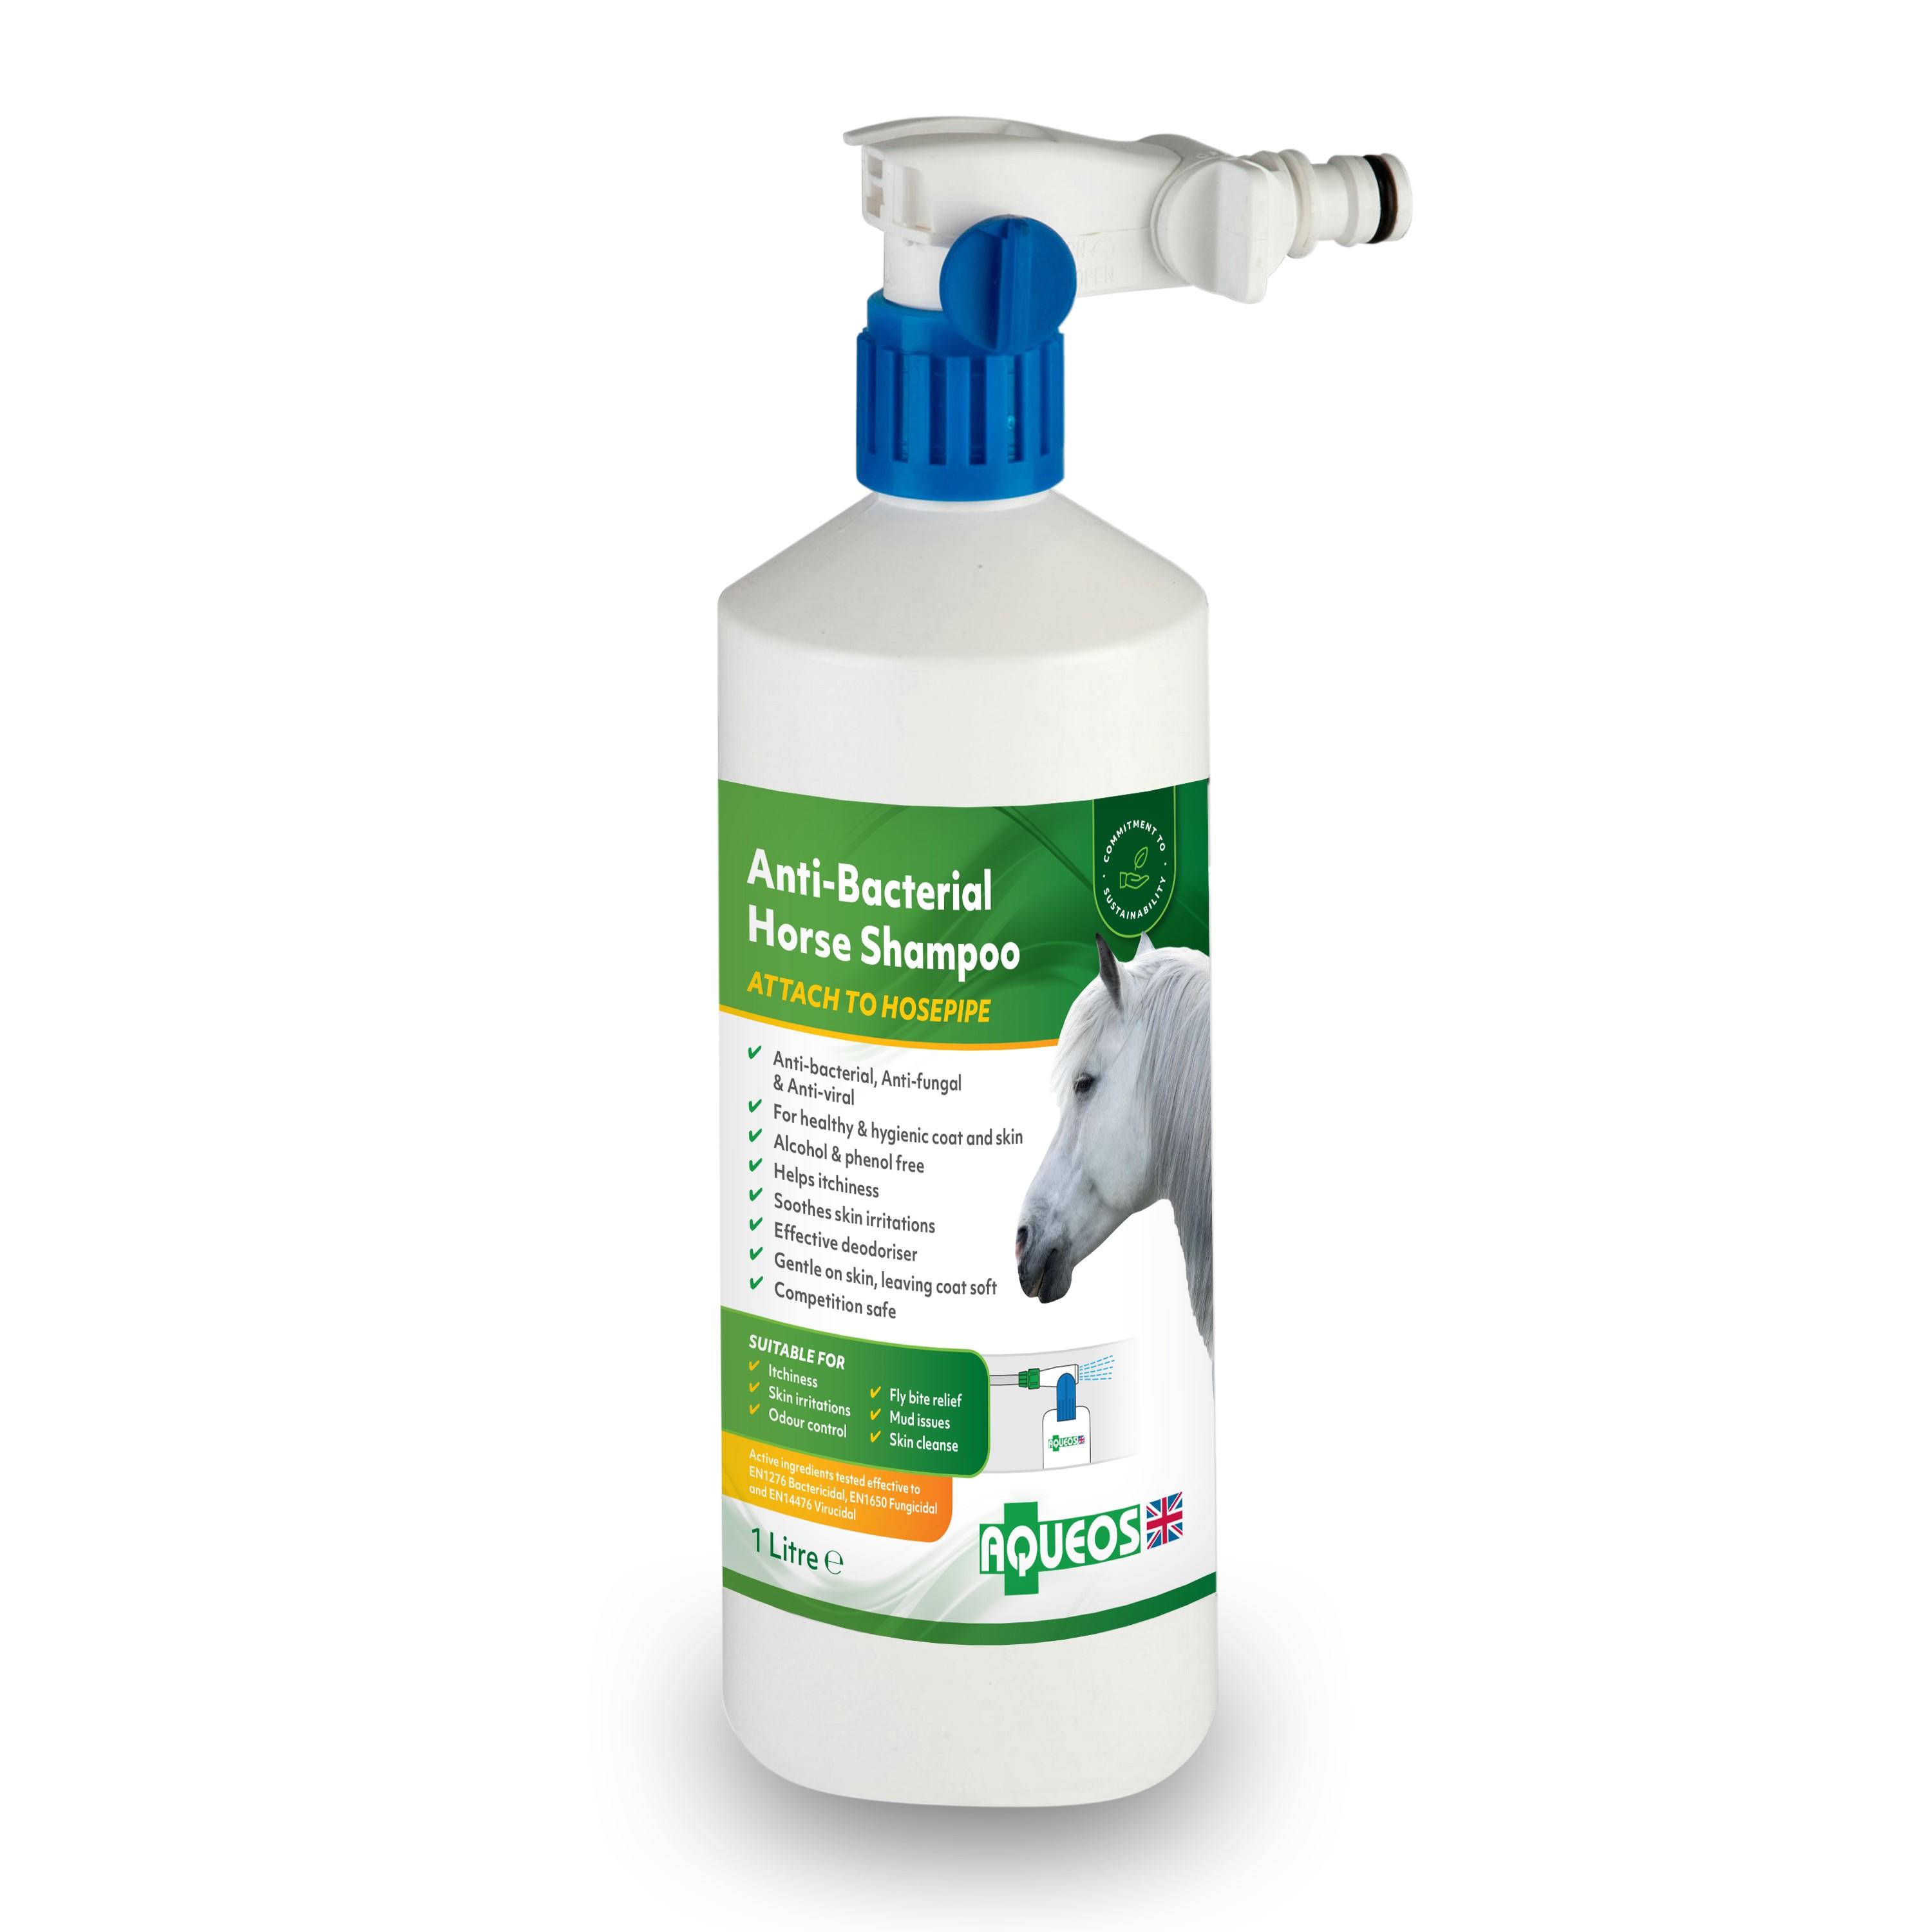 Aqueos Anti-Bacterial Horse Shampoo with Hose attachment